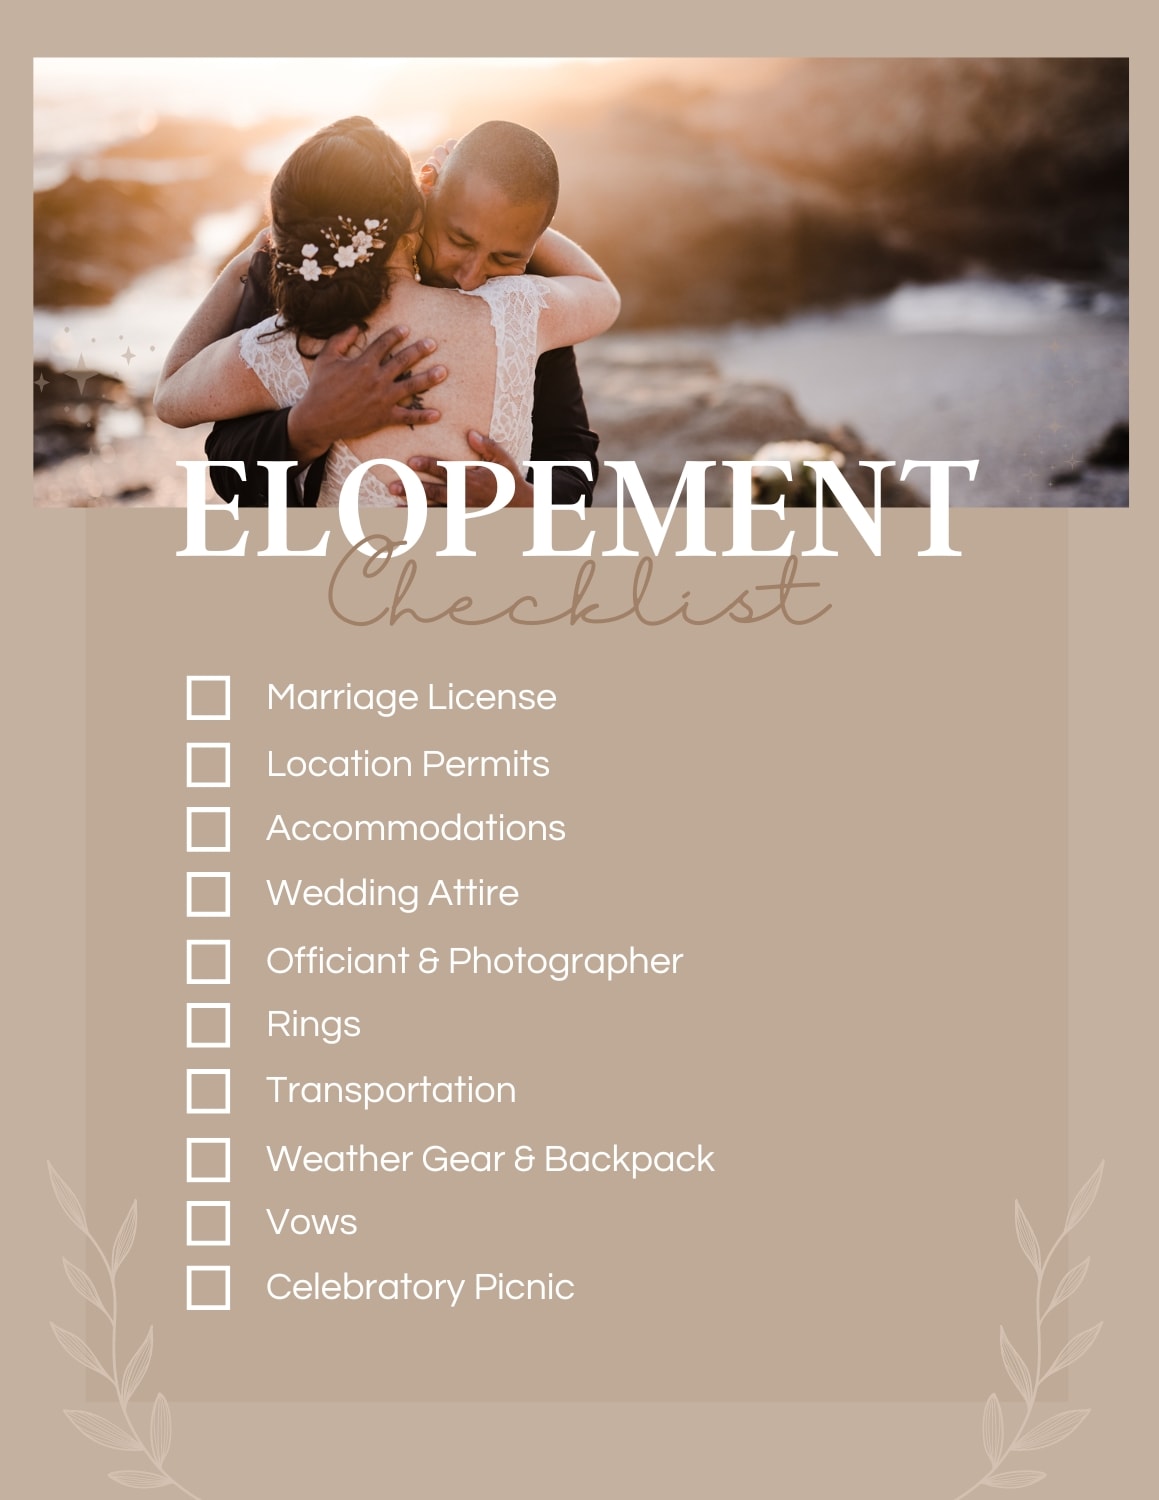 Elopement adventure checklist